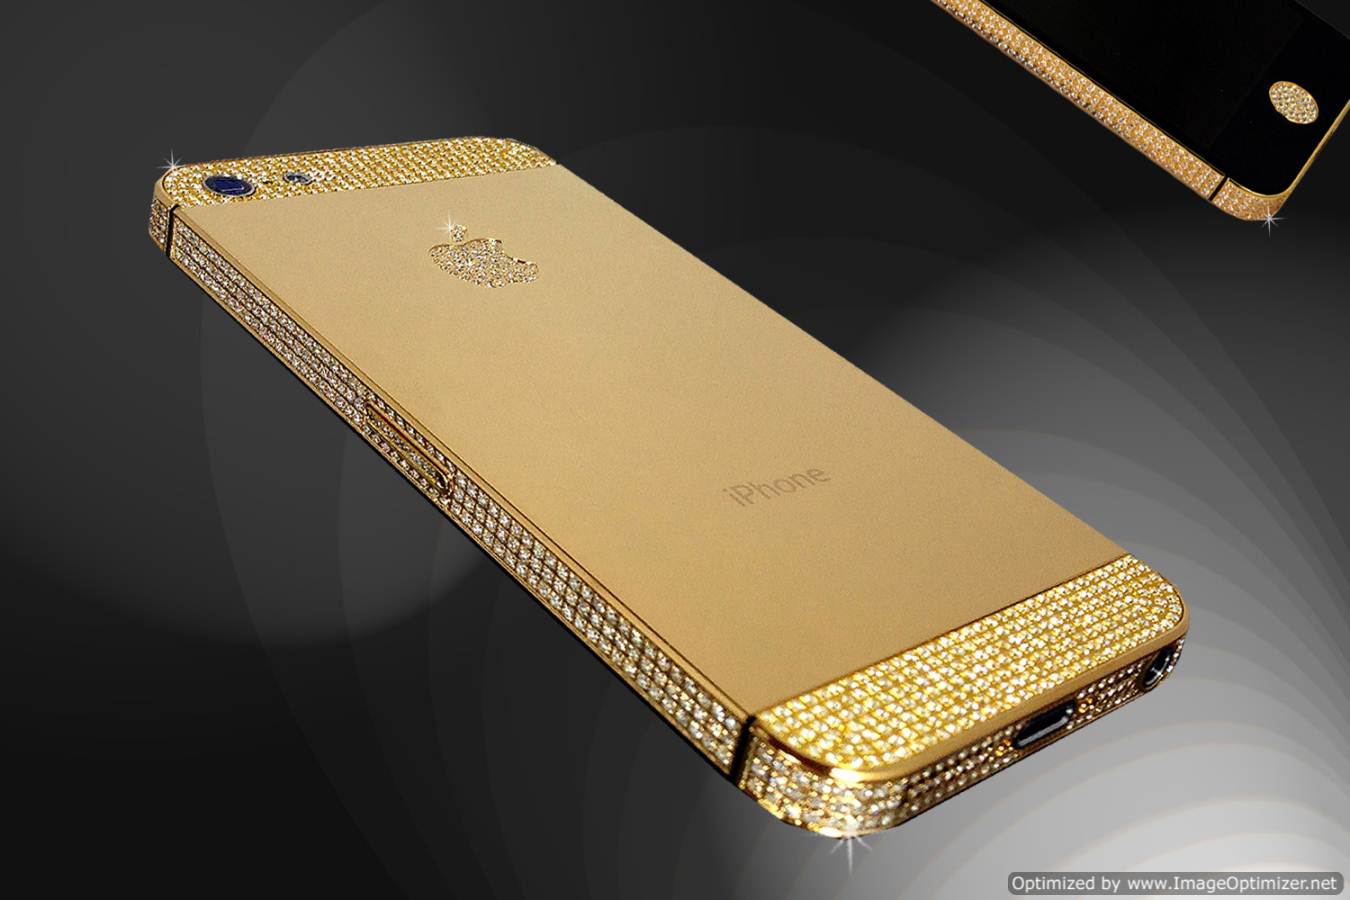 fond d'écran d'or hd pour iphone 6,or,métal,or,téléphone portable,gadget